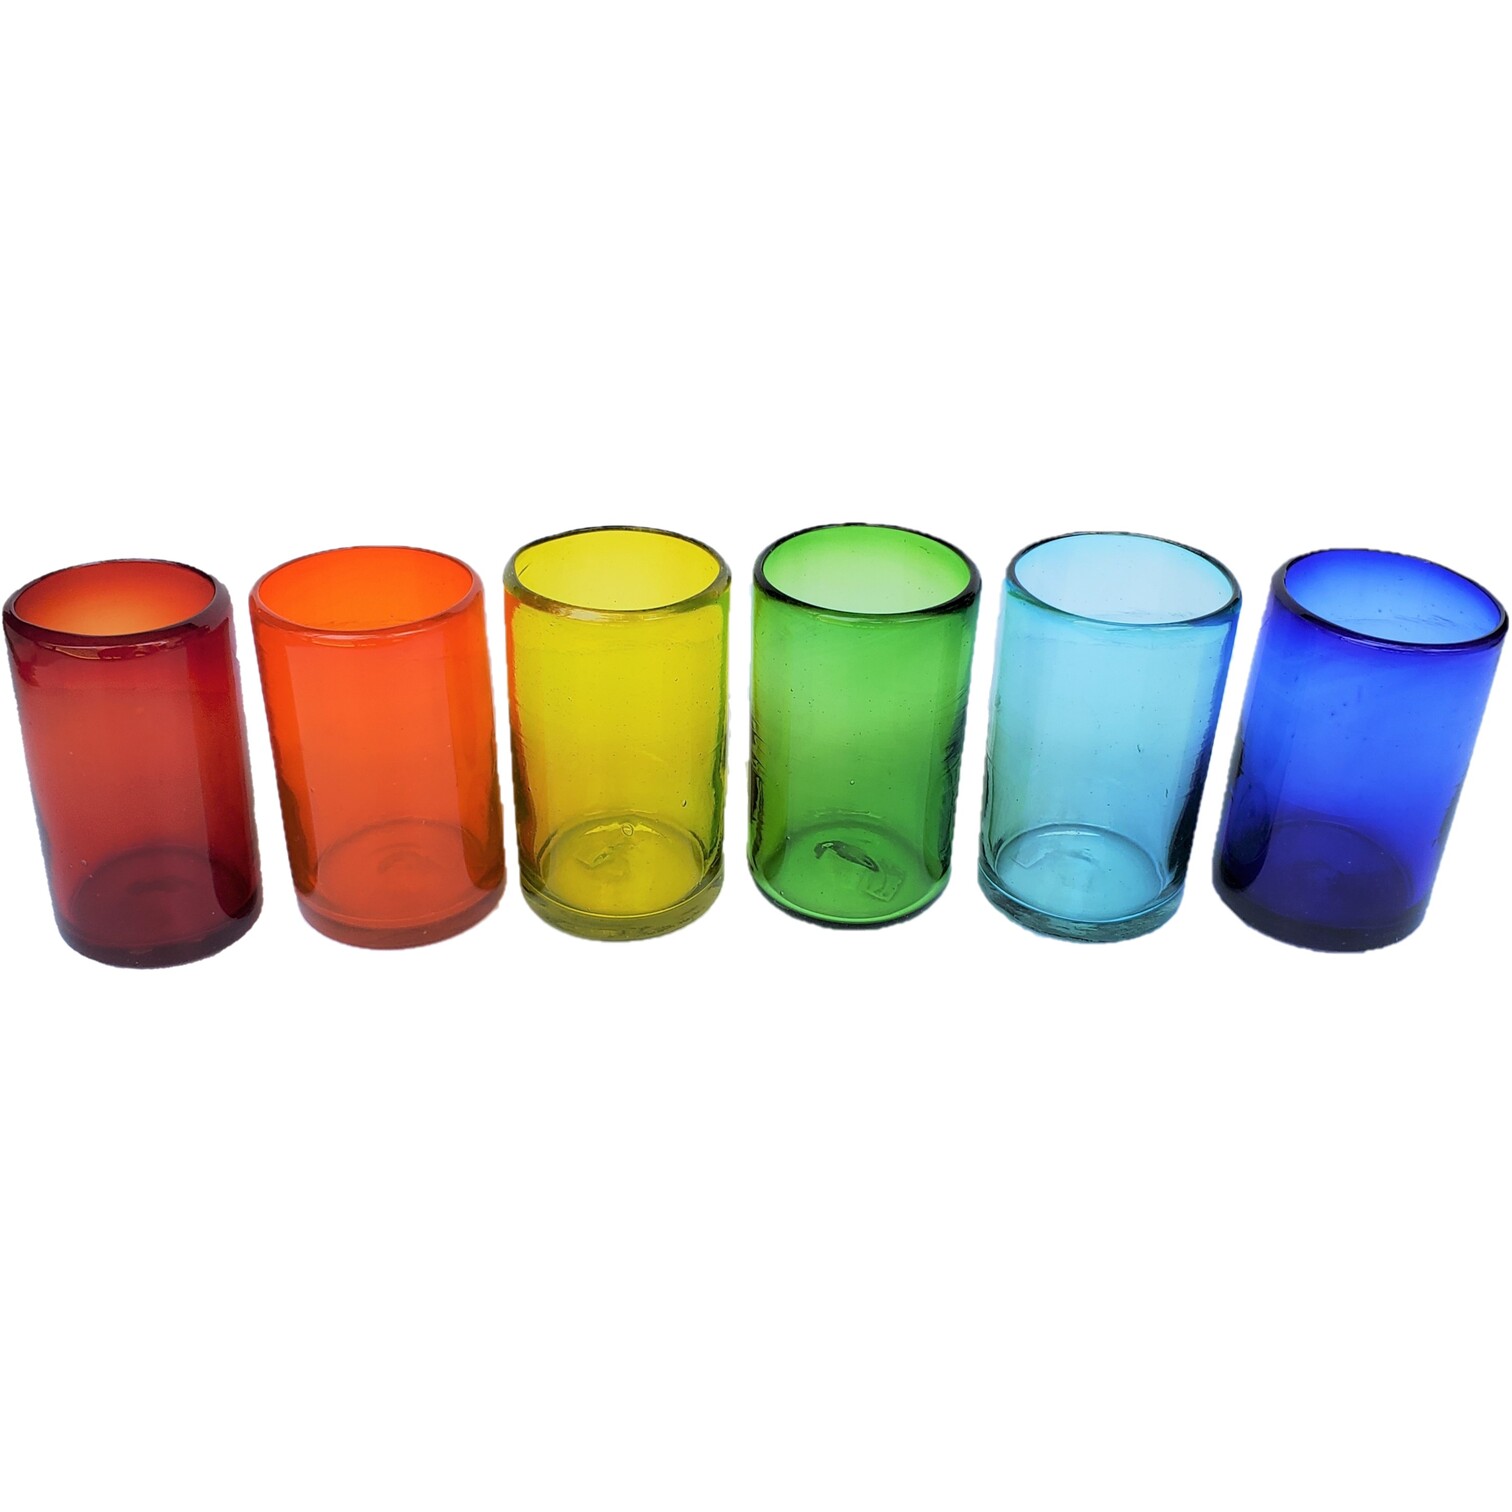 VIDRIO SOPLADO / vasos grandes de colores Arcoris